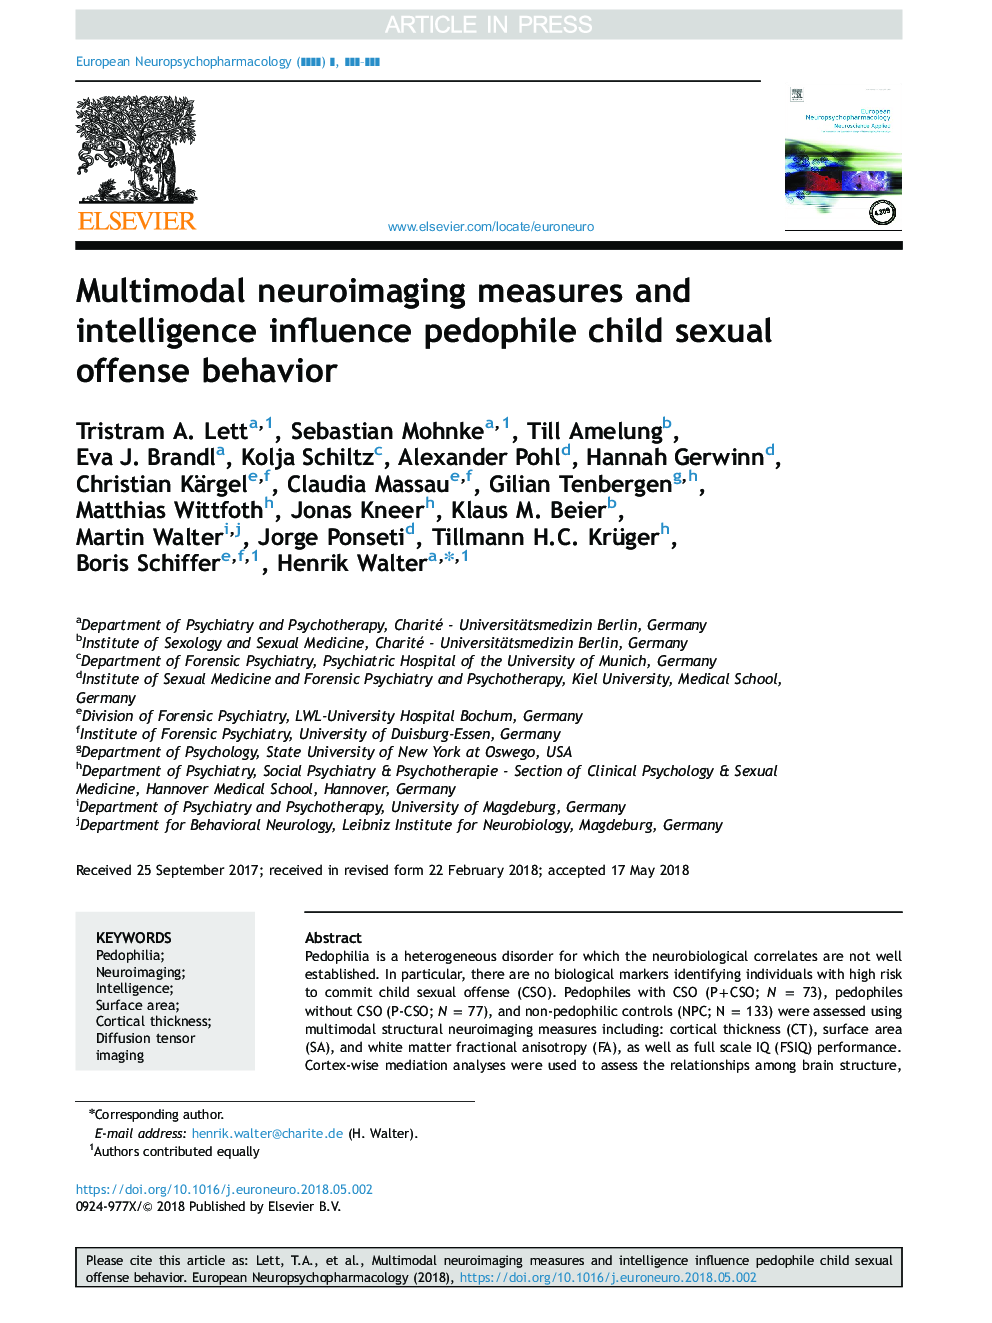 اقدامات و اطلاعات چندرسانه ای تصویربرداری عصبی بر رفتار جنسی جنایتکارانه کودک تاثیر می گذارد 